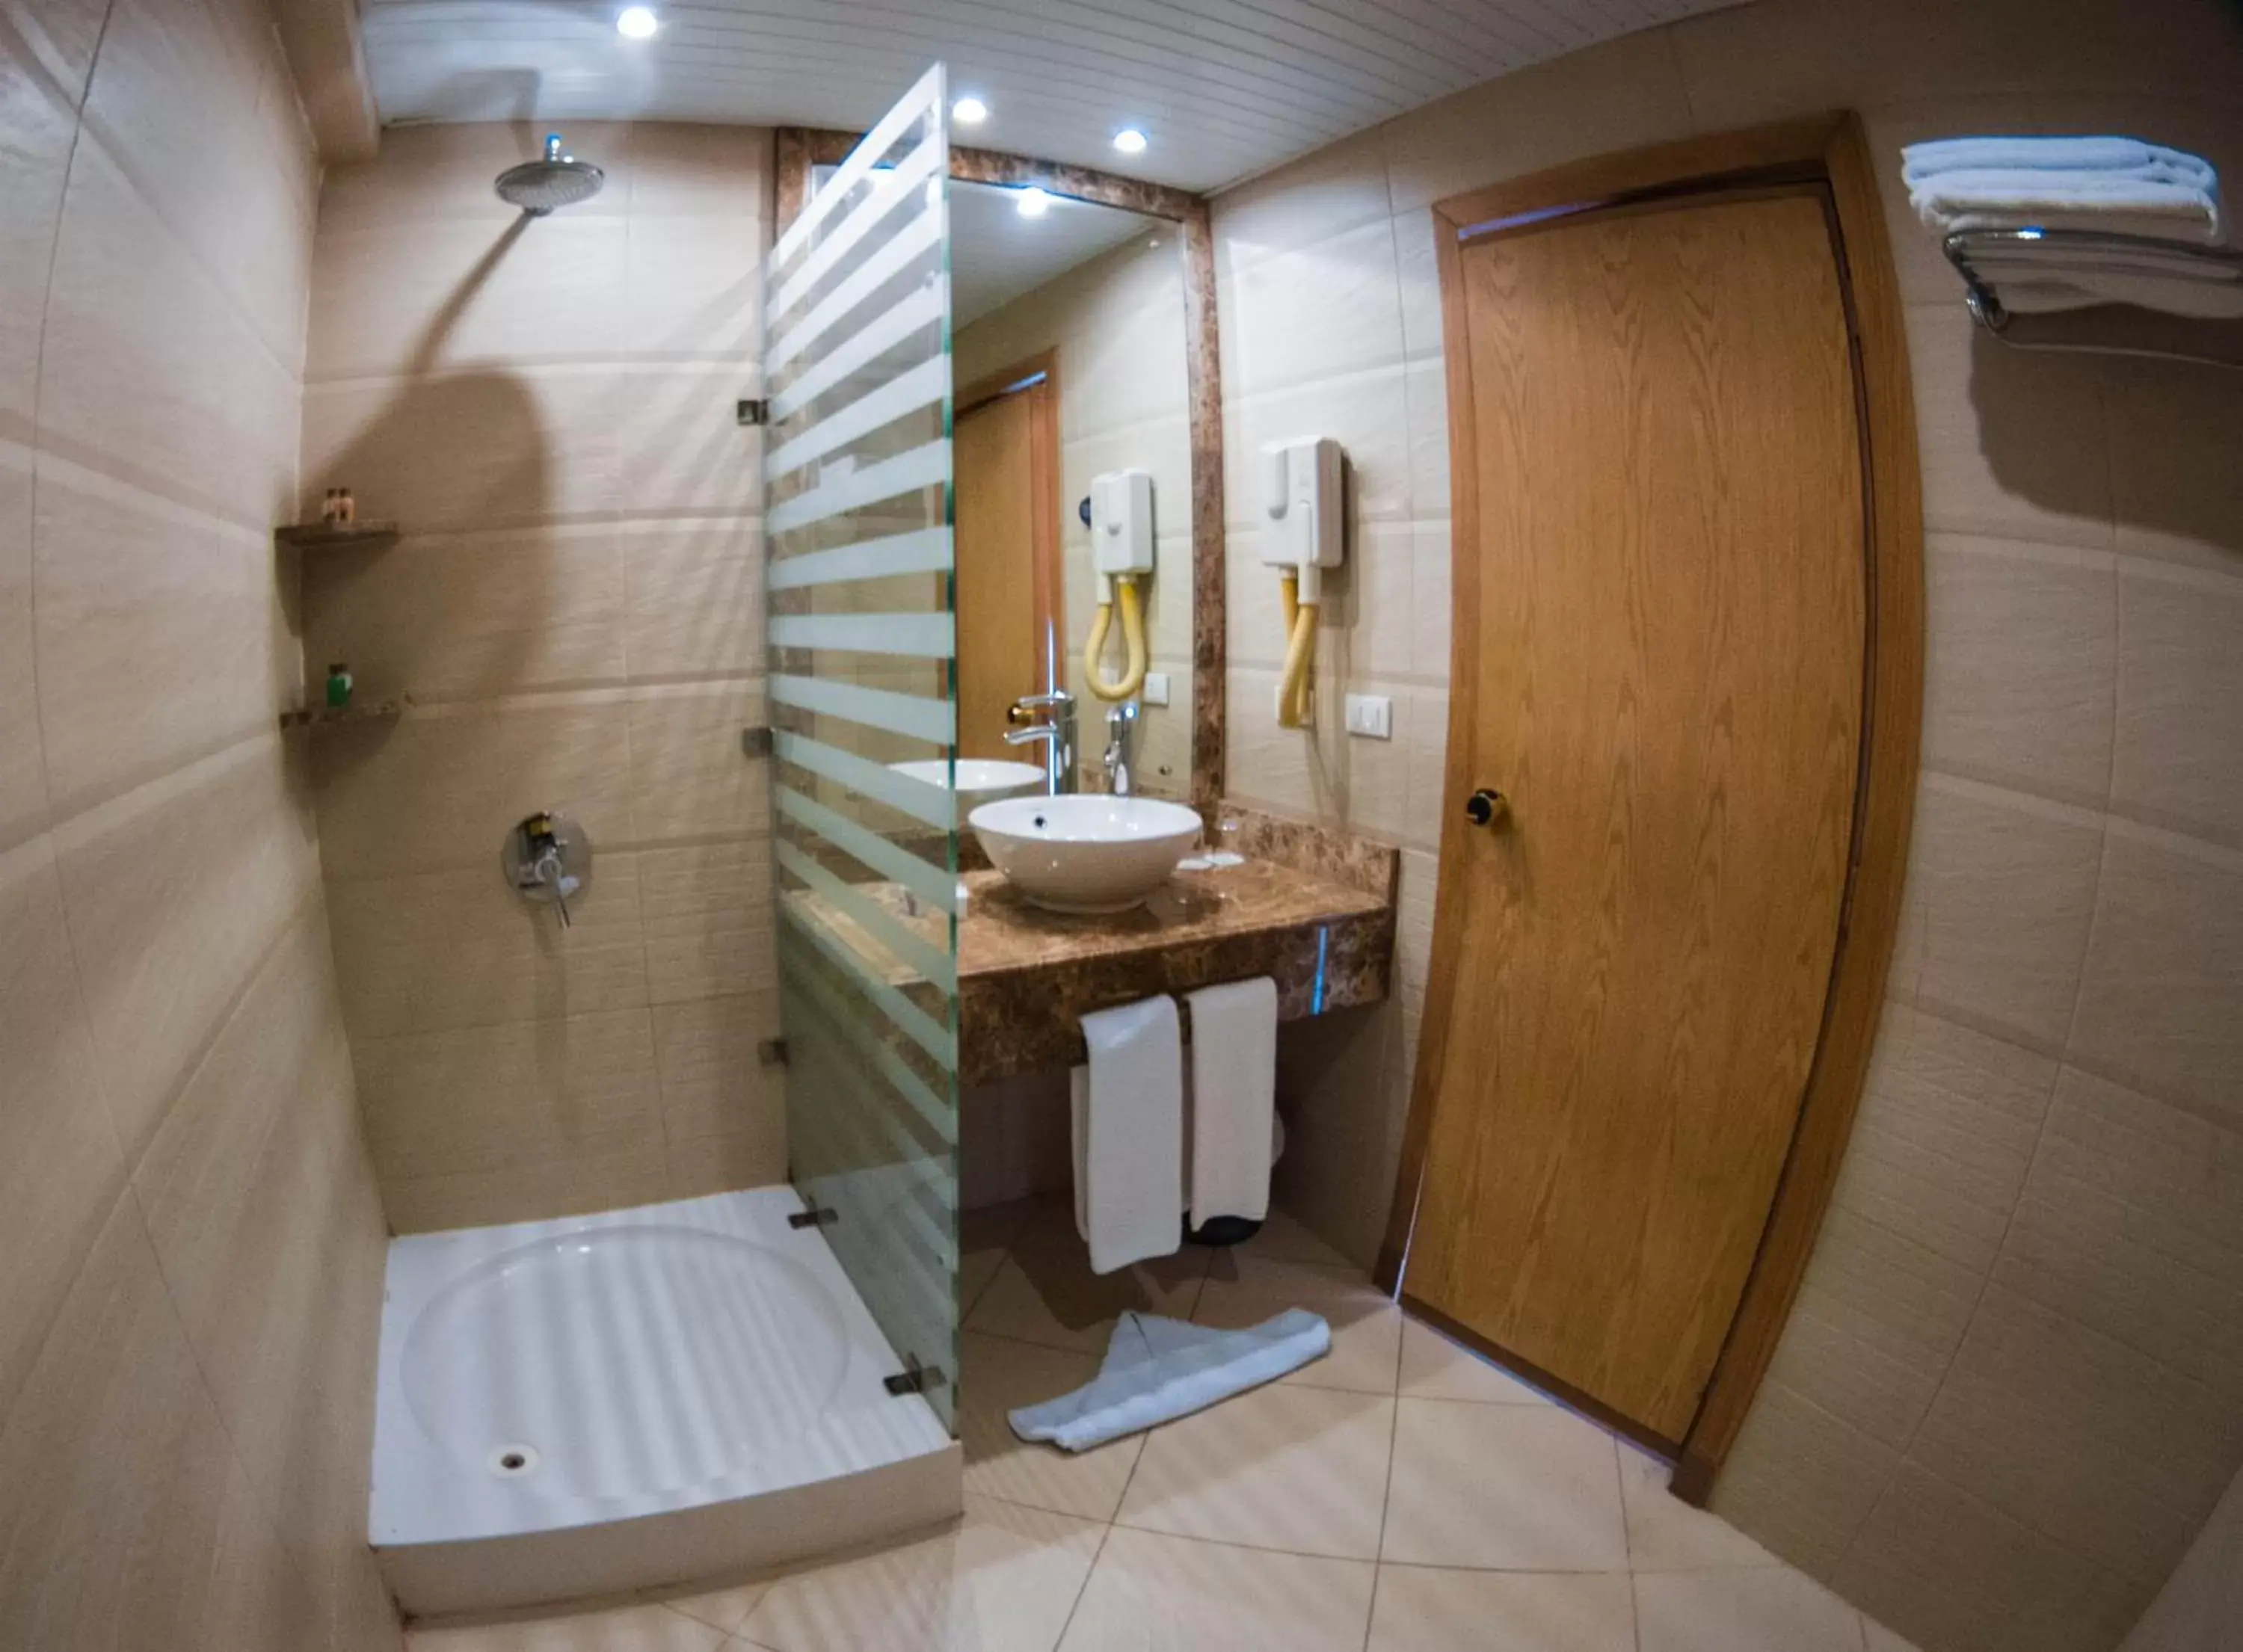 Bathroom in Golden Beach Resort